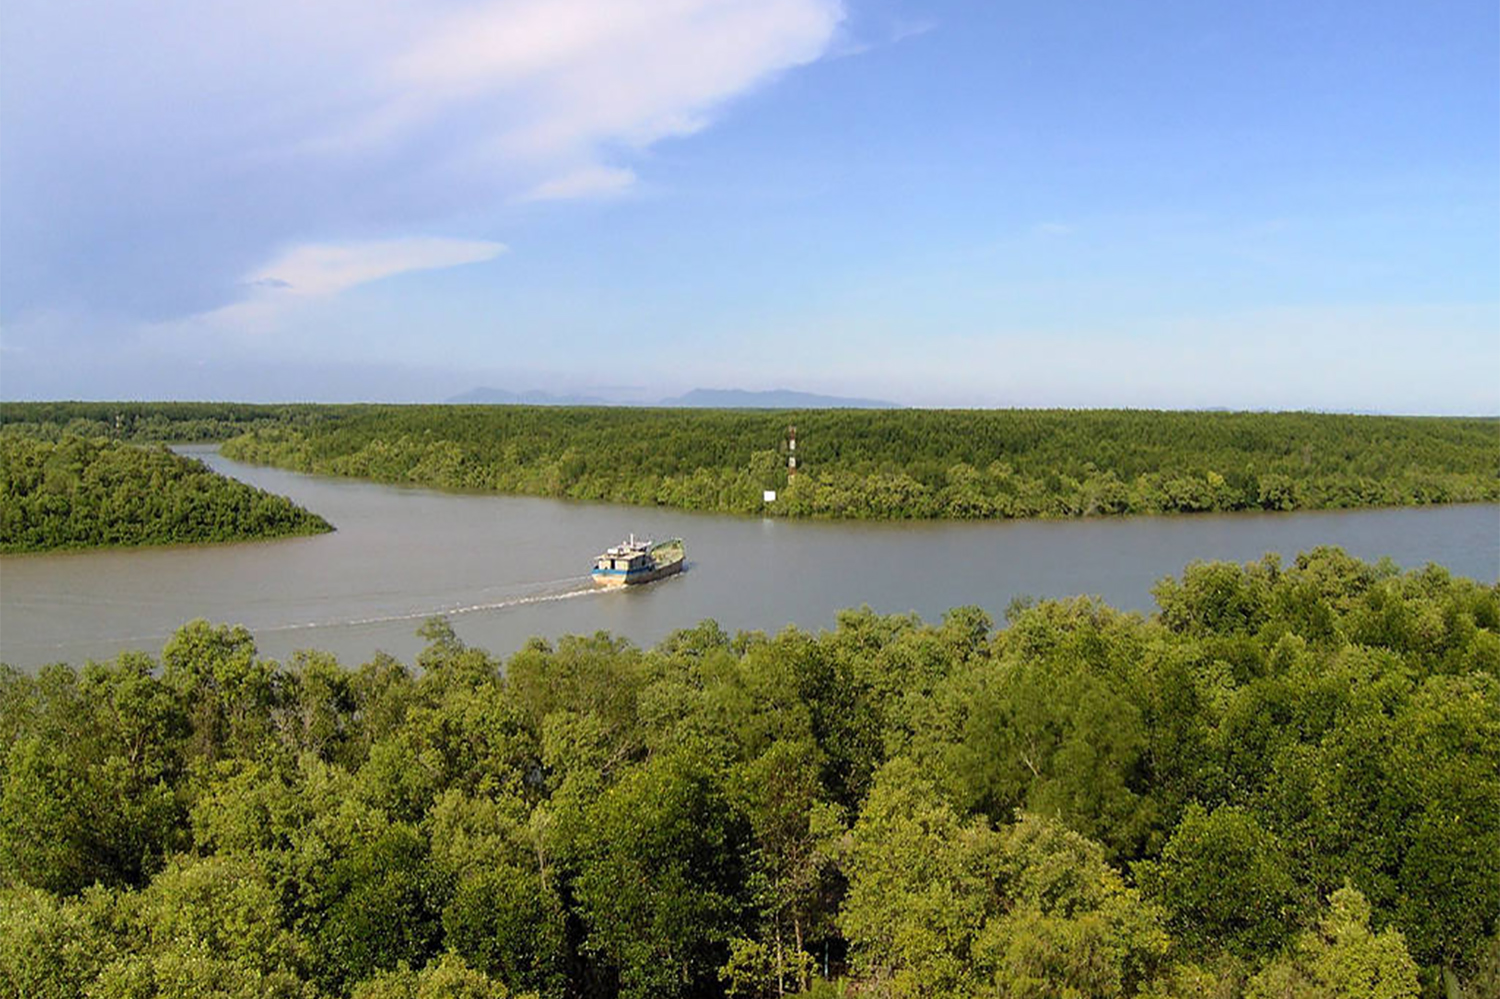 Des excursions éco-touristiques sont organisées pour faire connaître la mangrove et sensibiliser le public sur les effets de sa potentielle disparition. 